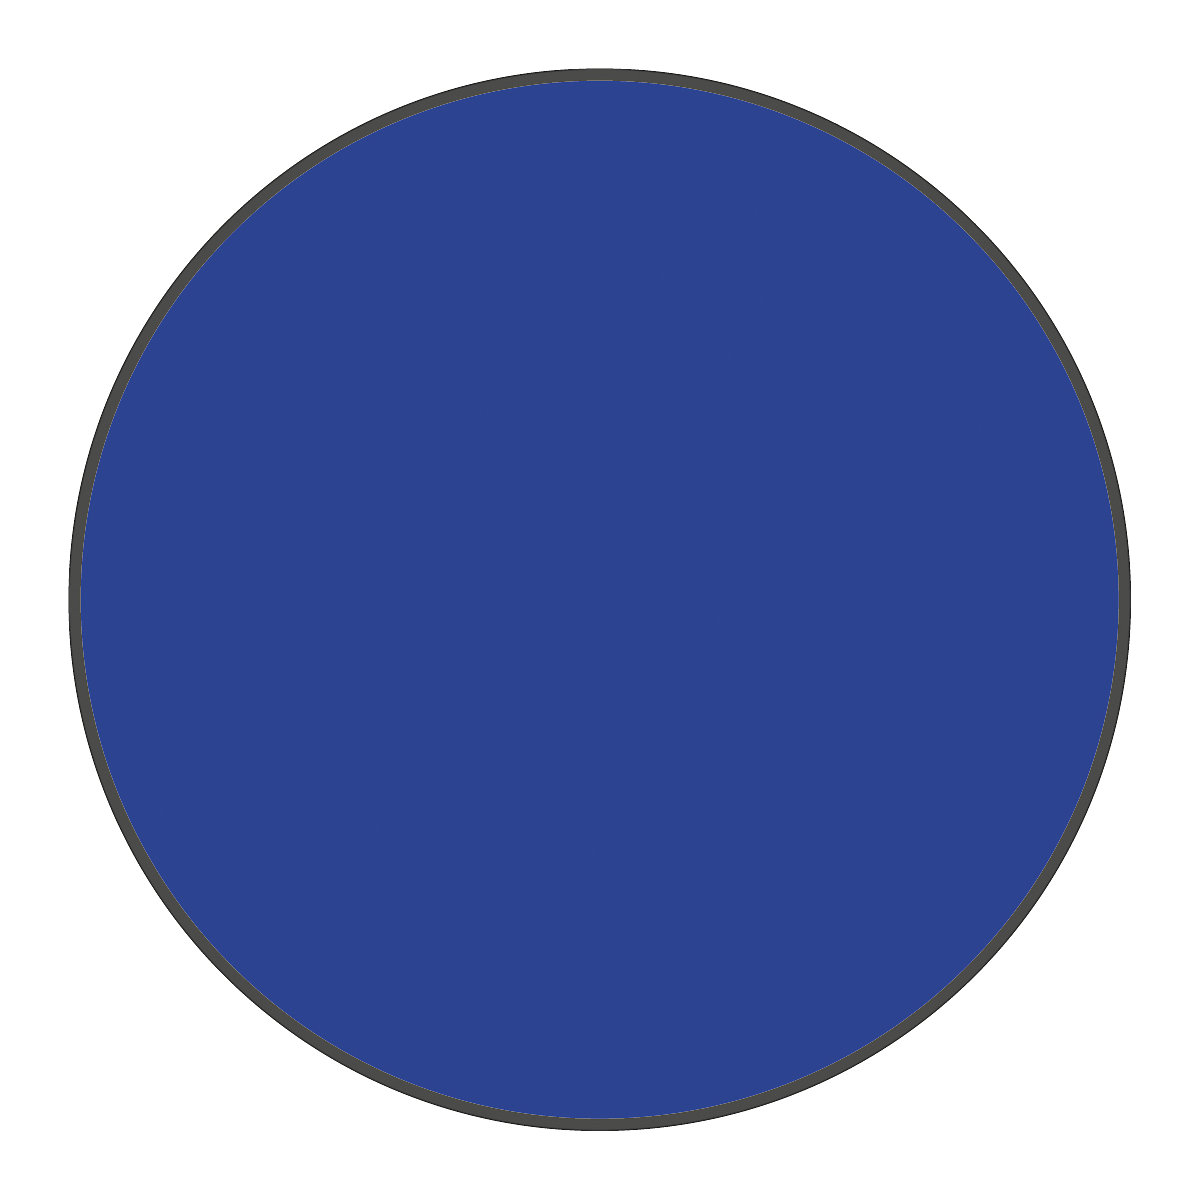 PVC padlójelölések, kör alakú, cs. e. 100 db, kék